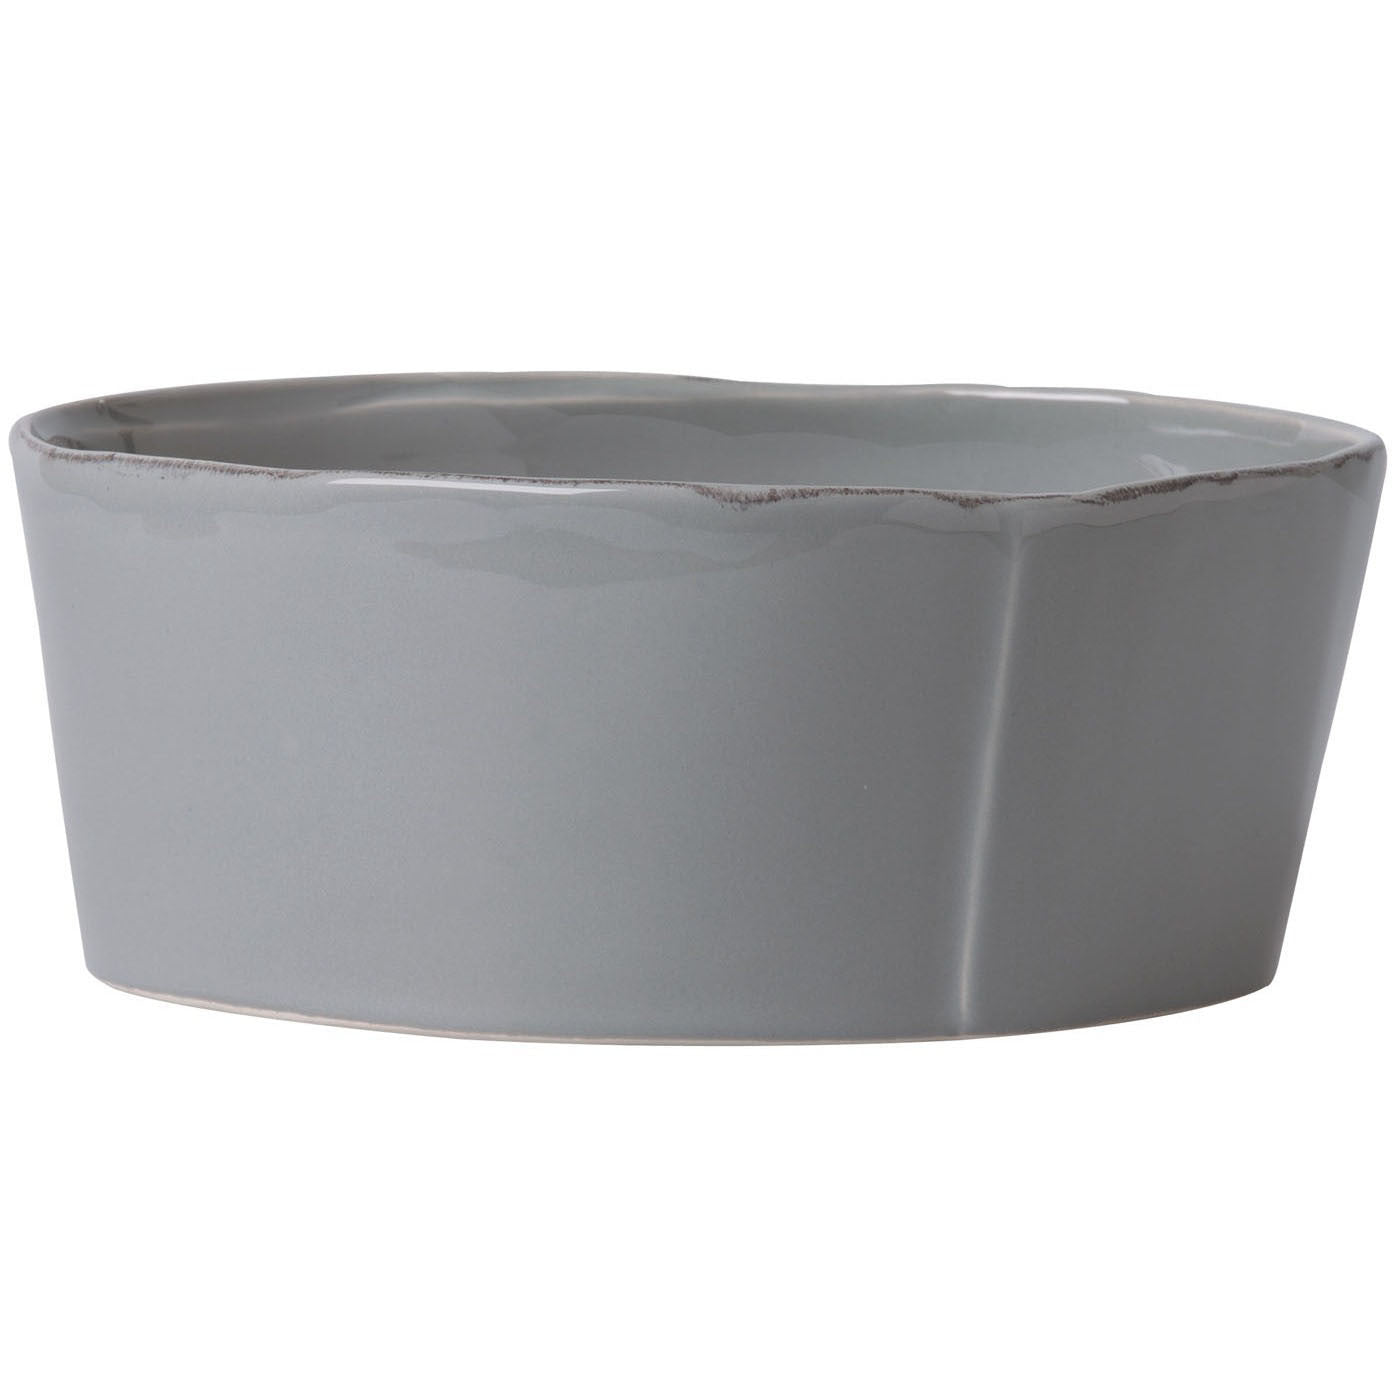 VIETRI: Lastra Gray Large Serving Bowl - Artistica.com